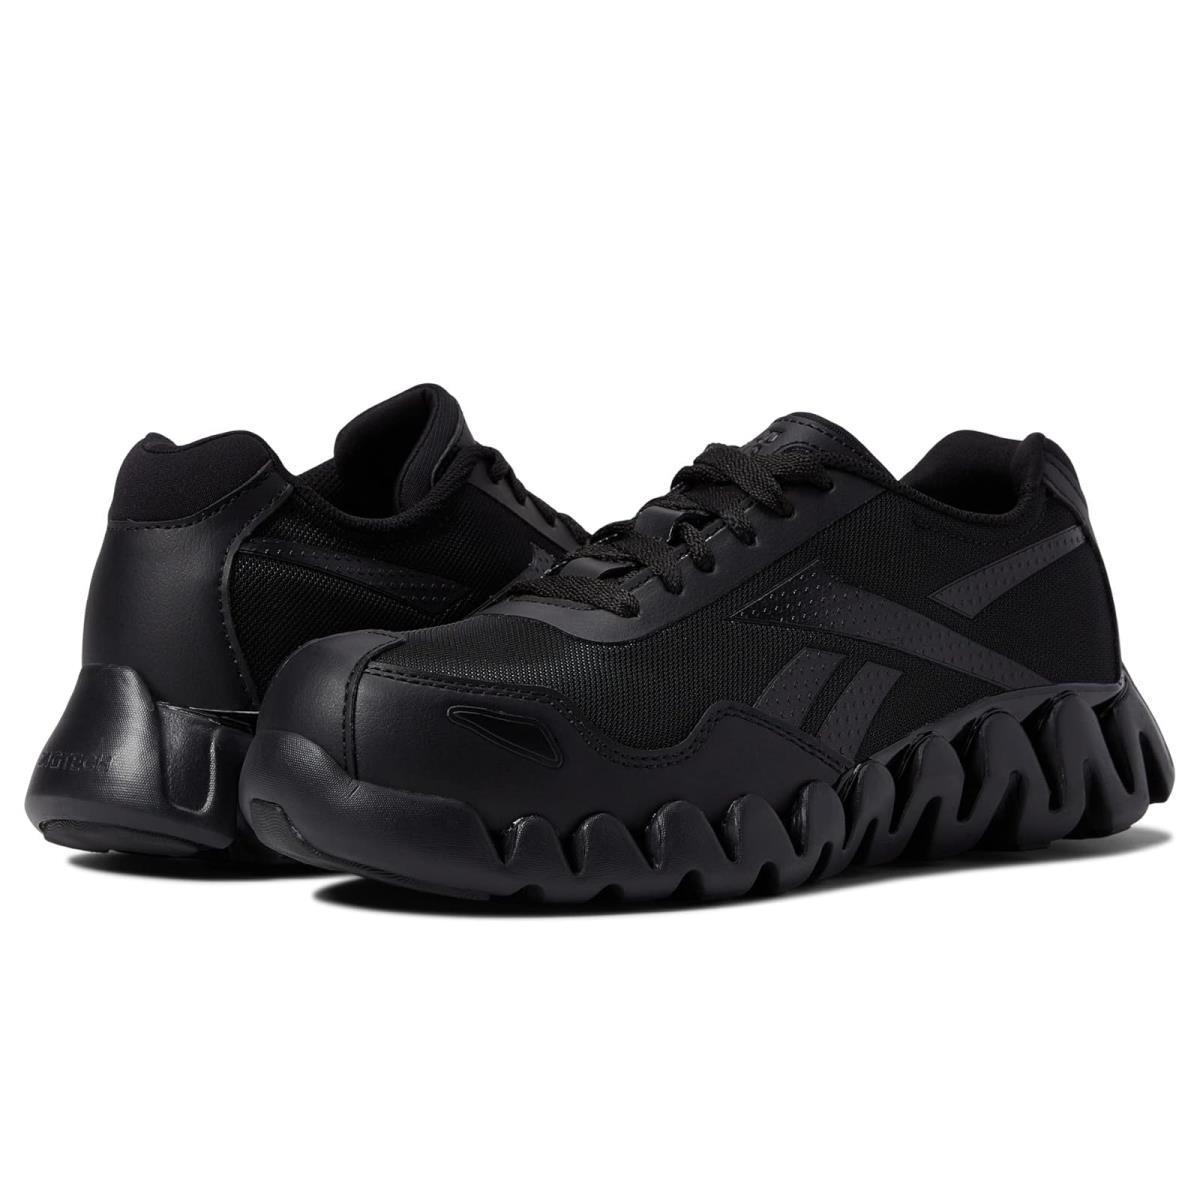 Woman`s Sneakers Athletic Shoes Reebok Work Zig Pulse Work EH Comp Toe Black